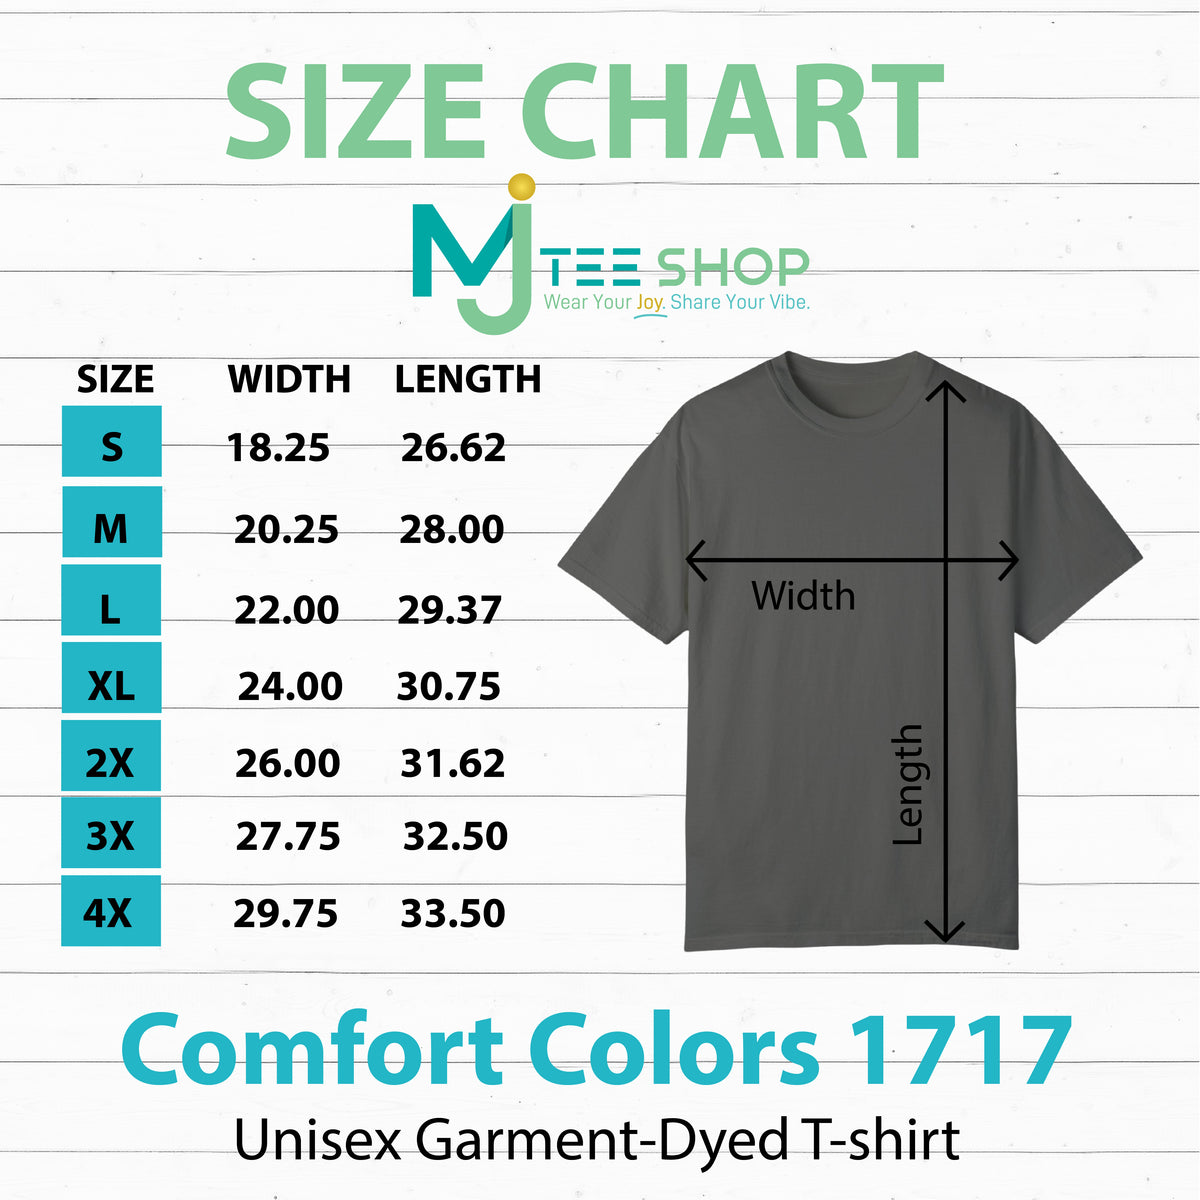 a t - shirt measurements chart for a men's t - shirt